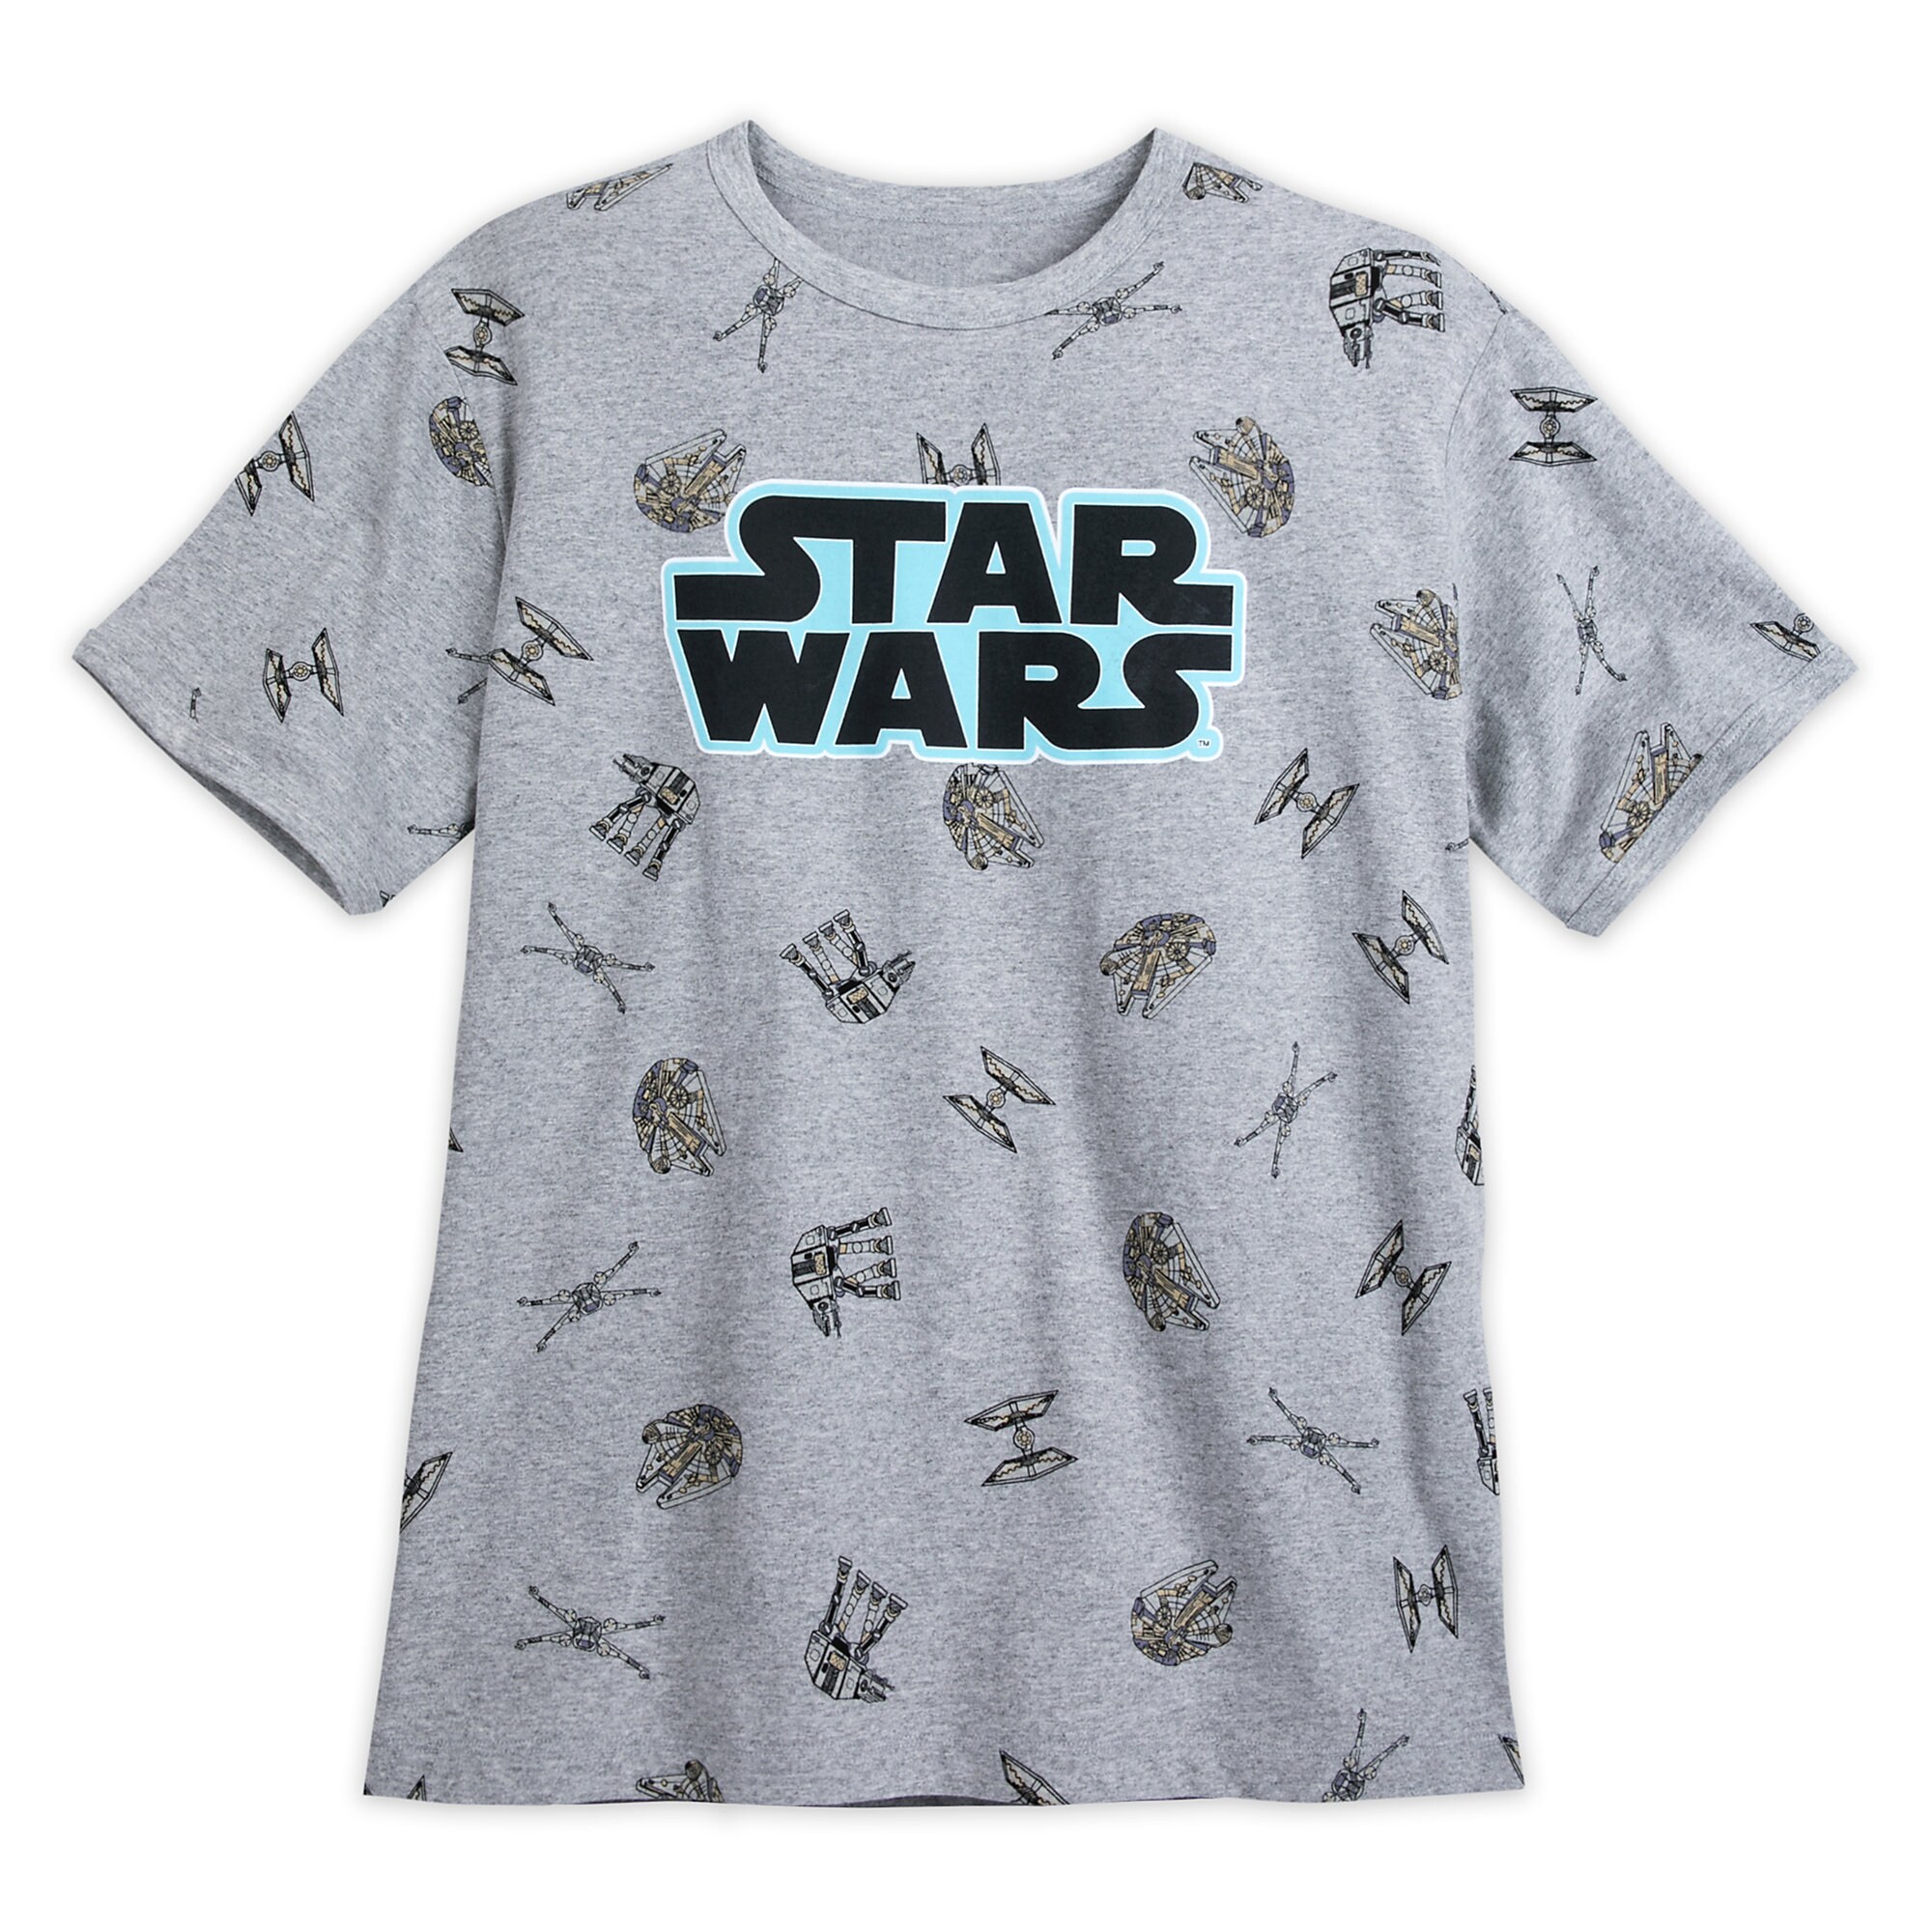 Star Wars Family T-Shirt for Men